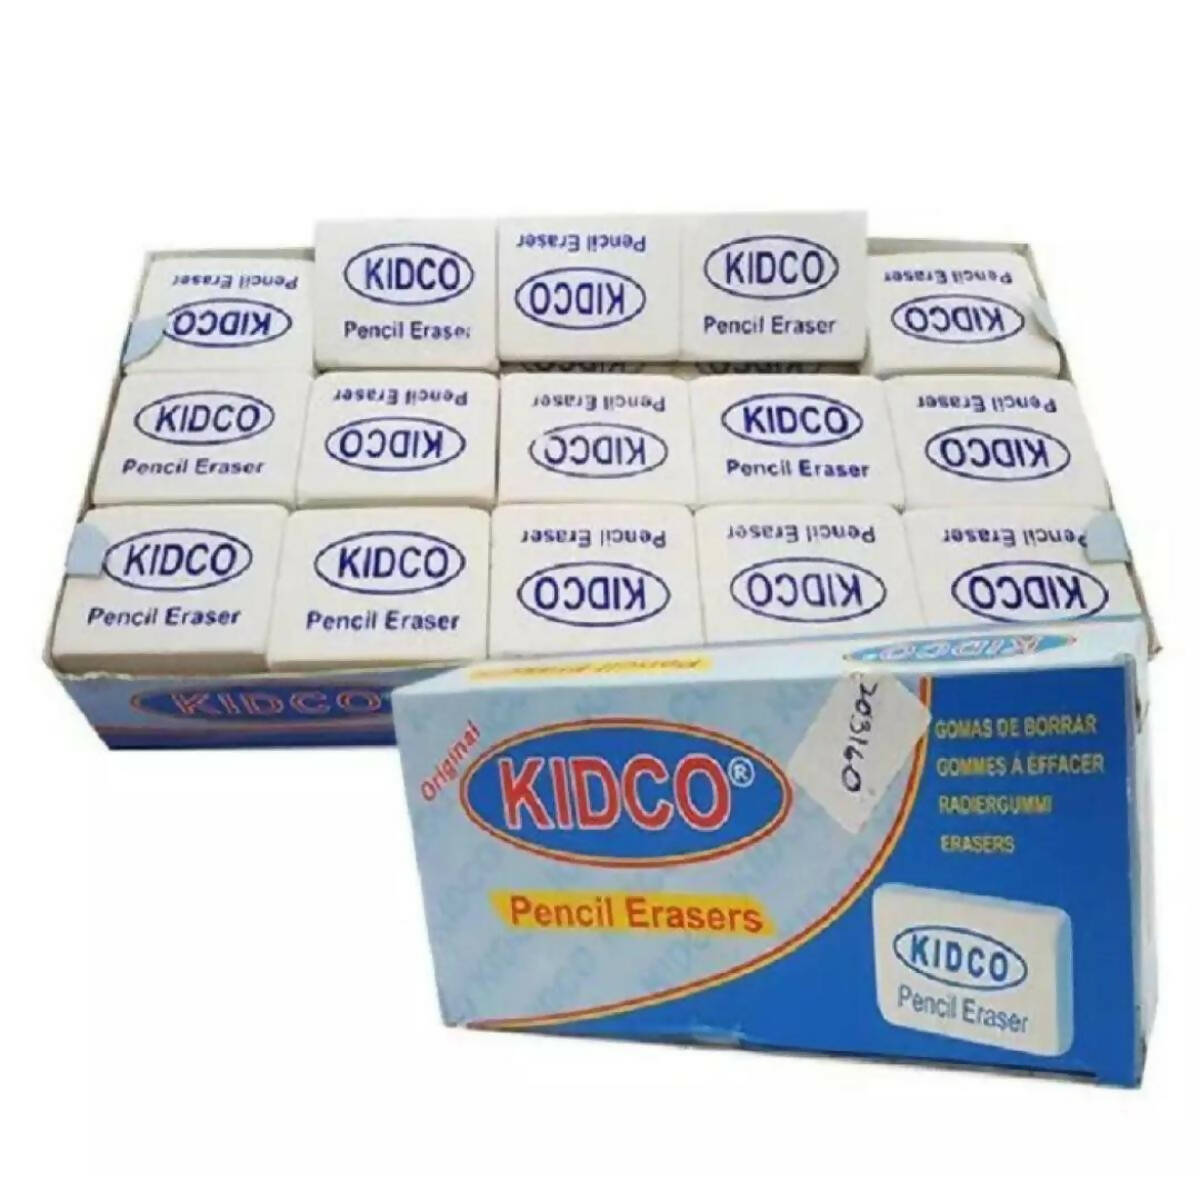 Kidco Pencil Eraser K-745 Packing 45 pcs